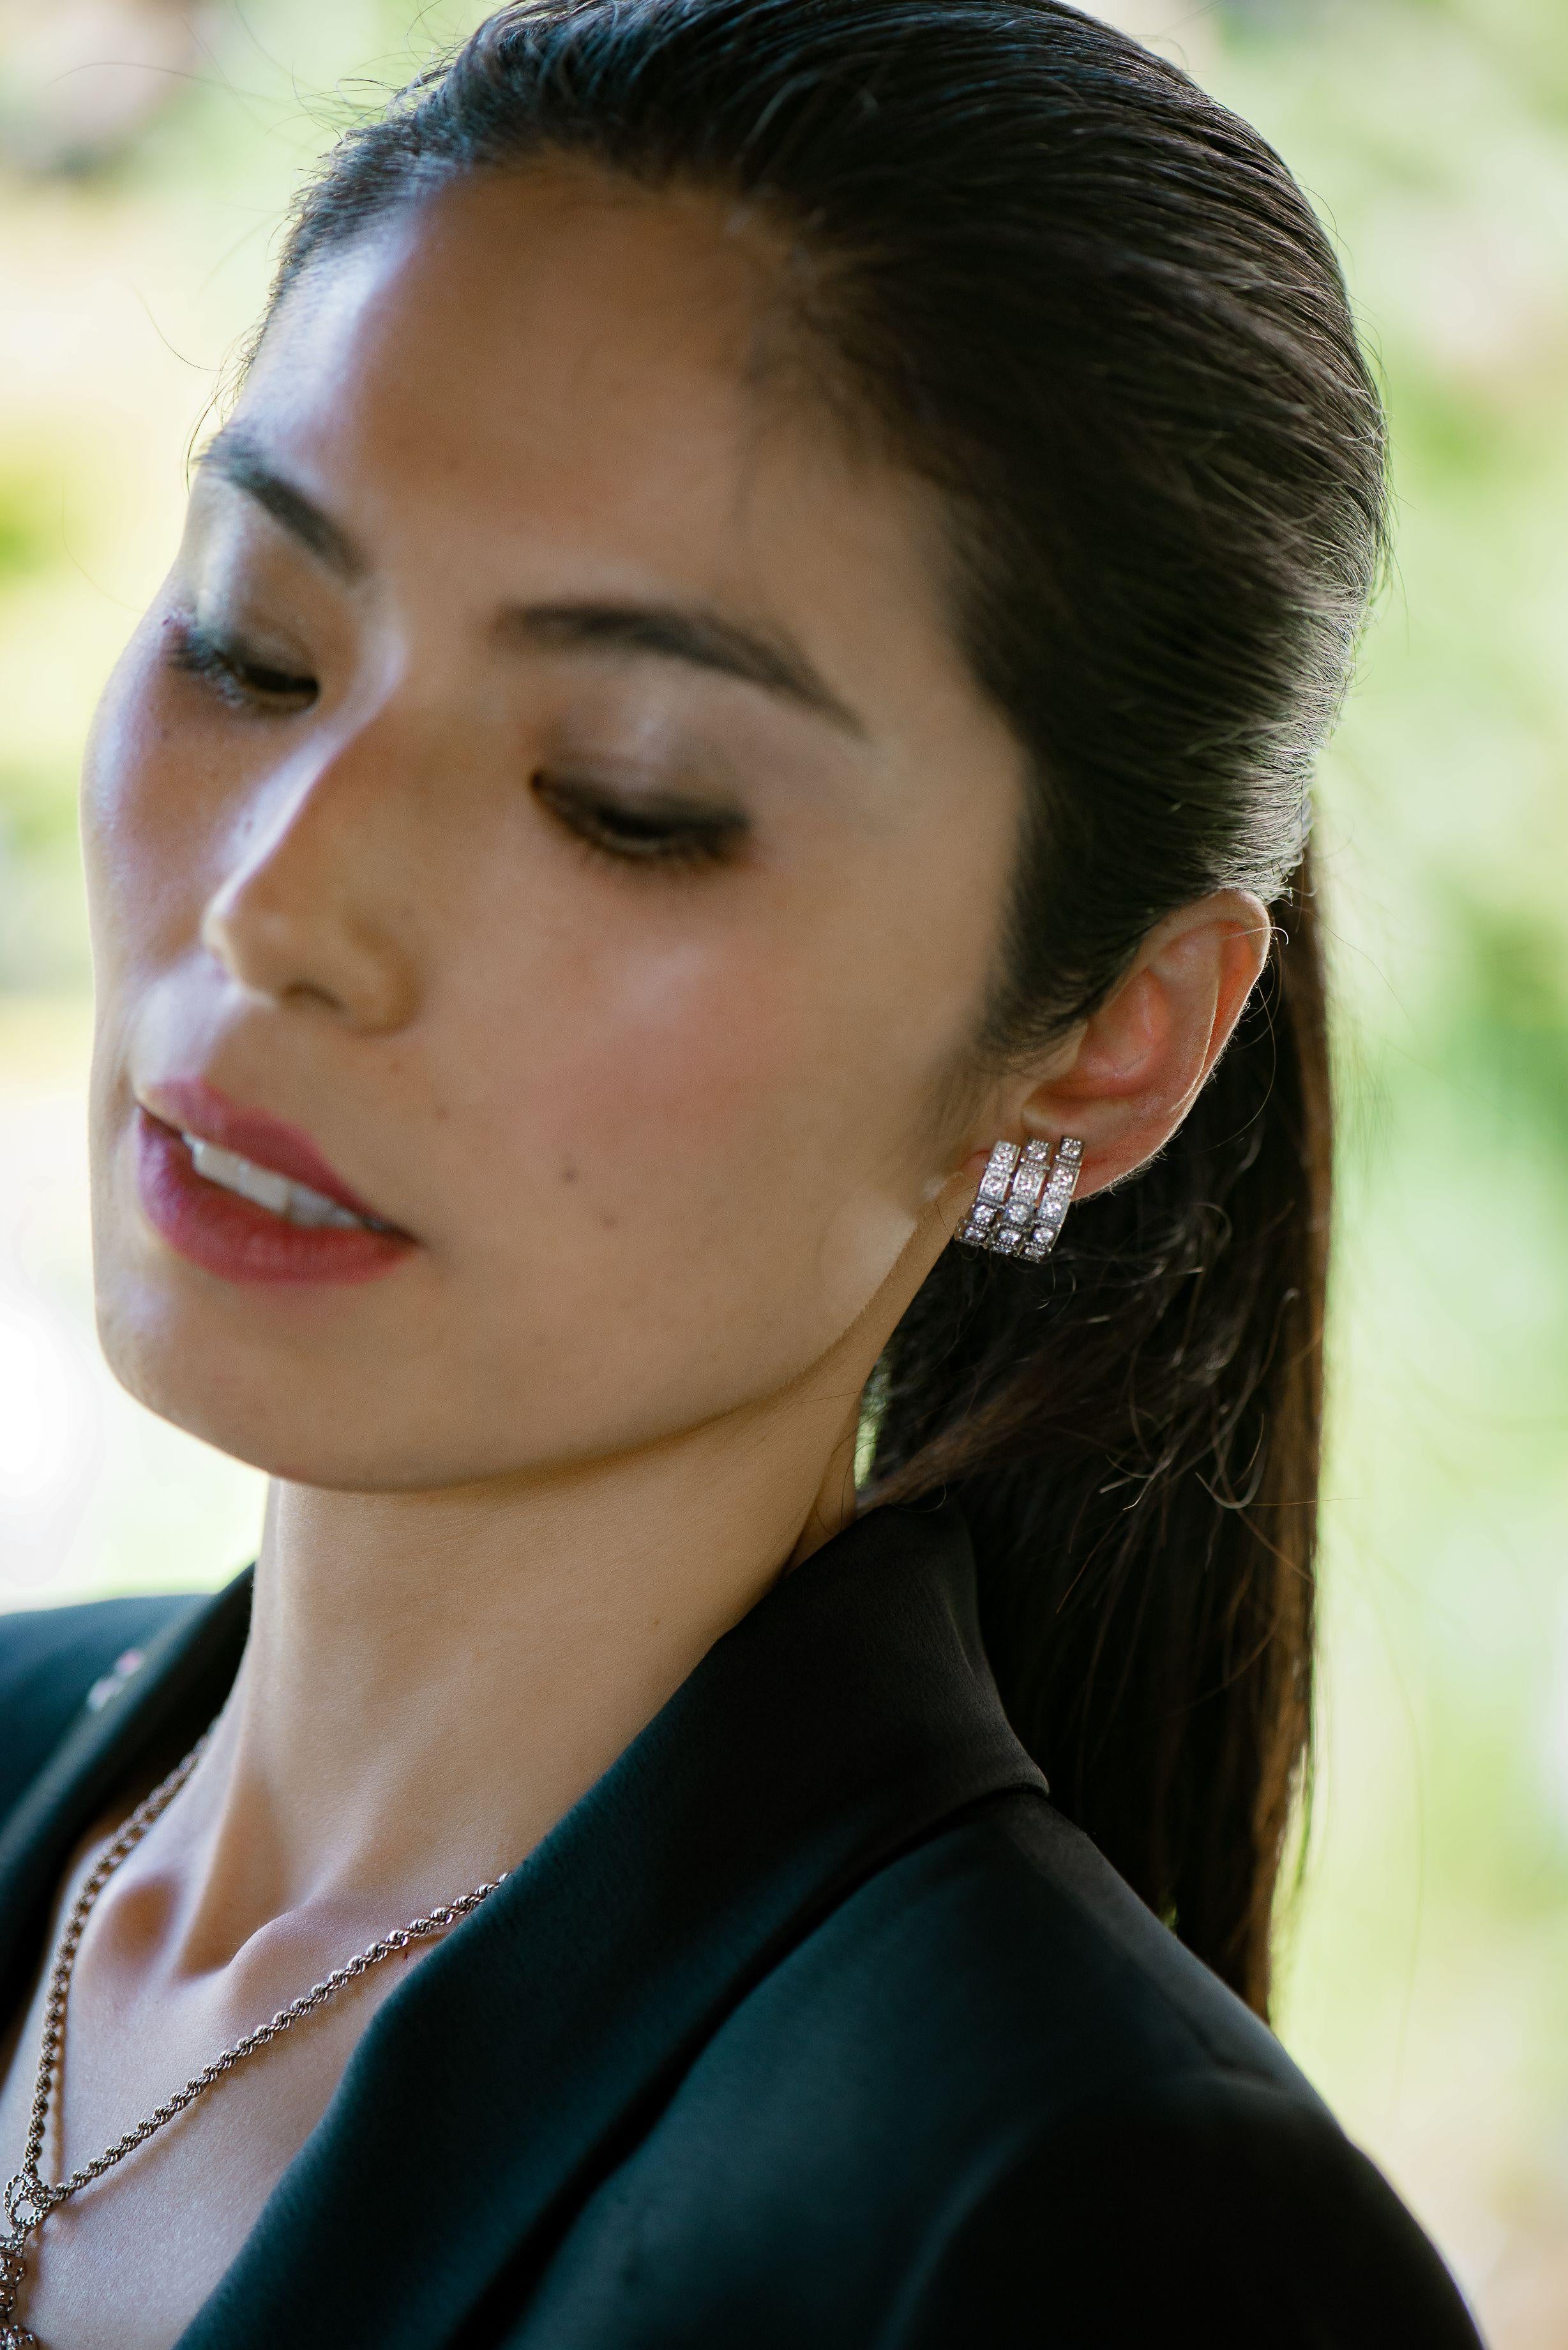 die Ohrstecker aus 18 Karat Weißgold sind von Damier Collection. Diese eleganten Ohrringe bestehen aus 36 natürlichen weißen Diamanten von insgesamt 2,27 Karat. Das Gesamtgewicht des Metalls beträgt 16,45 g. Perfekt für jede Gelegenheit! 

Damier